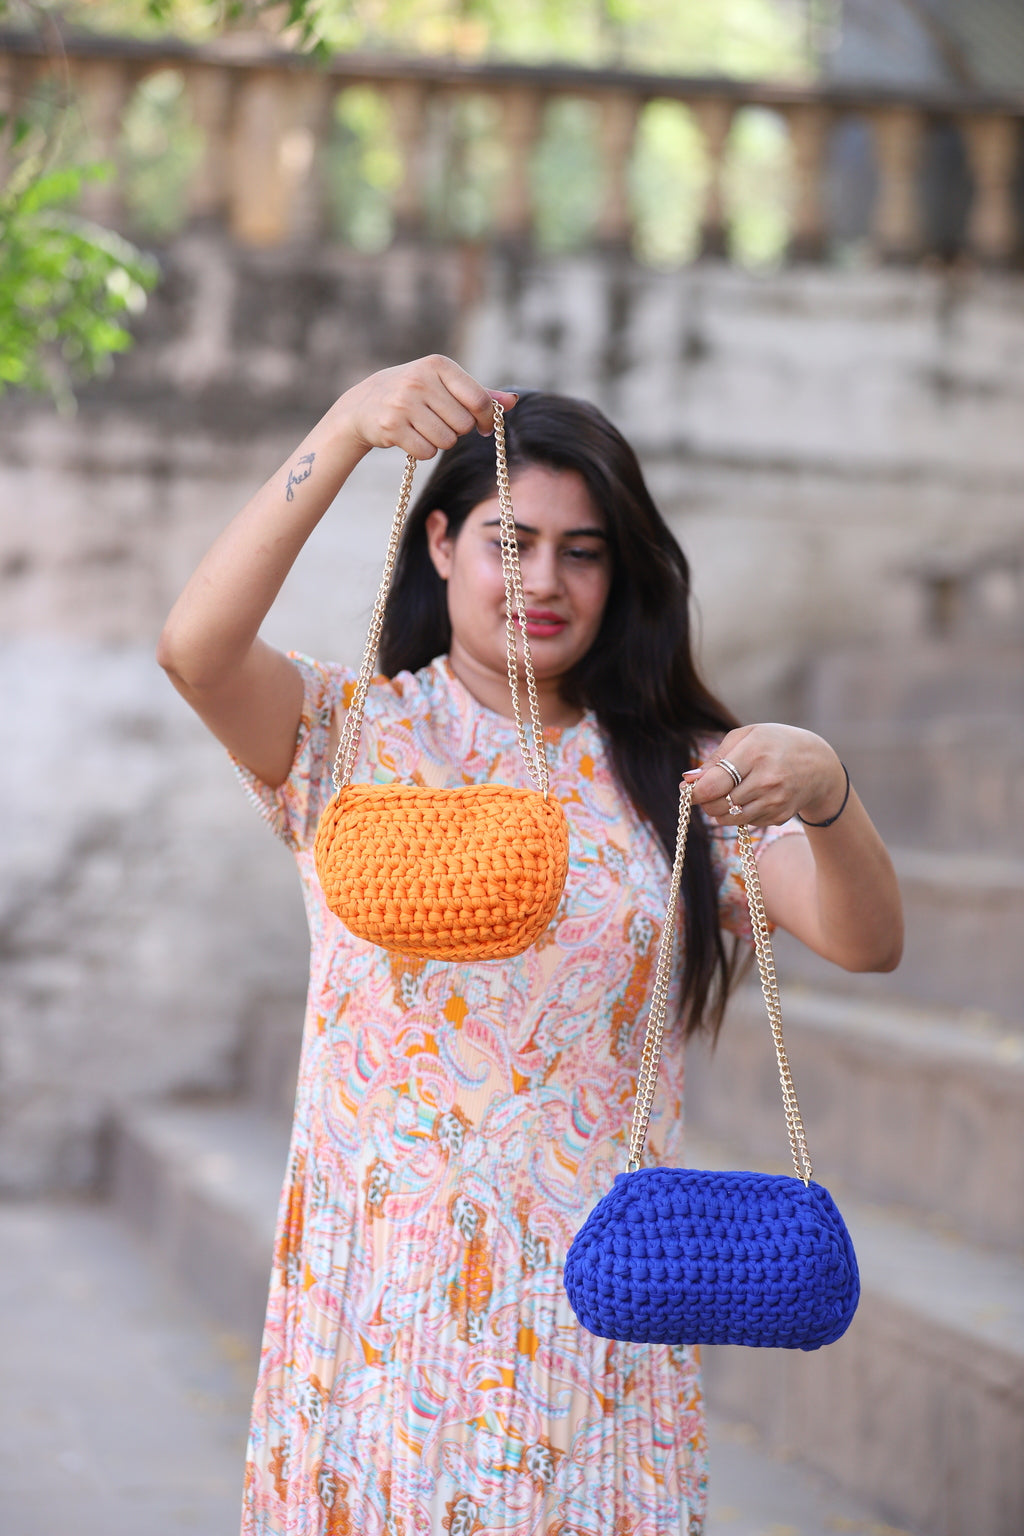 Handmade Orange Crochet Bag